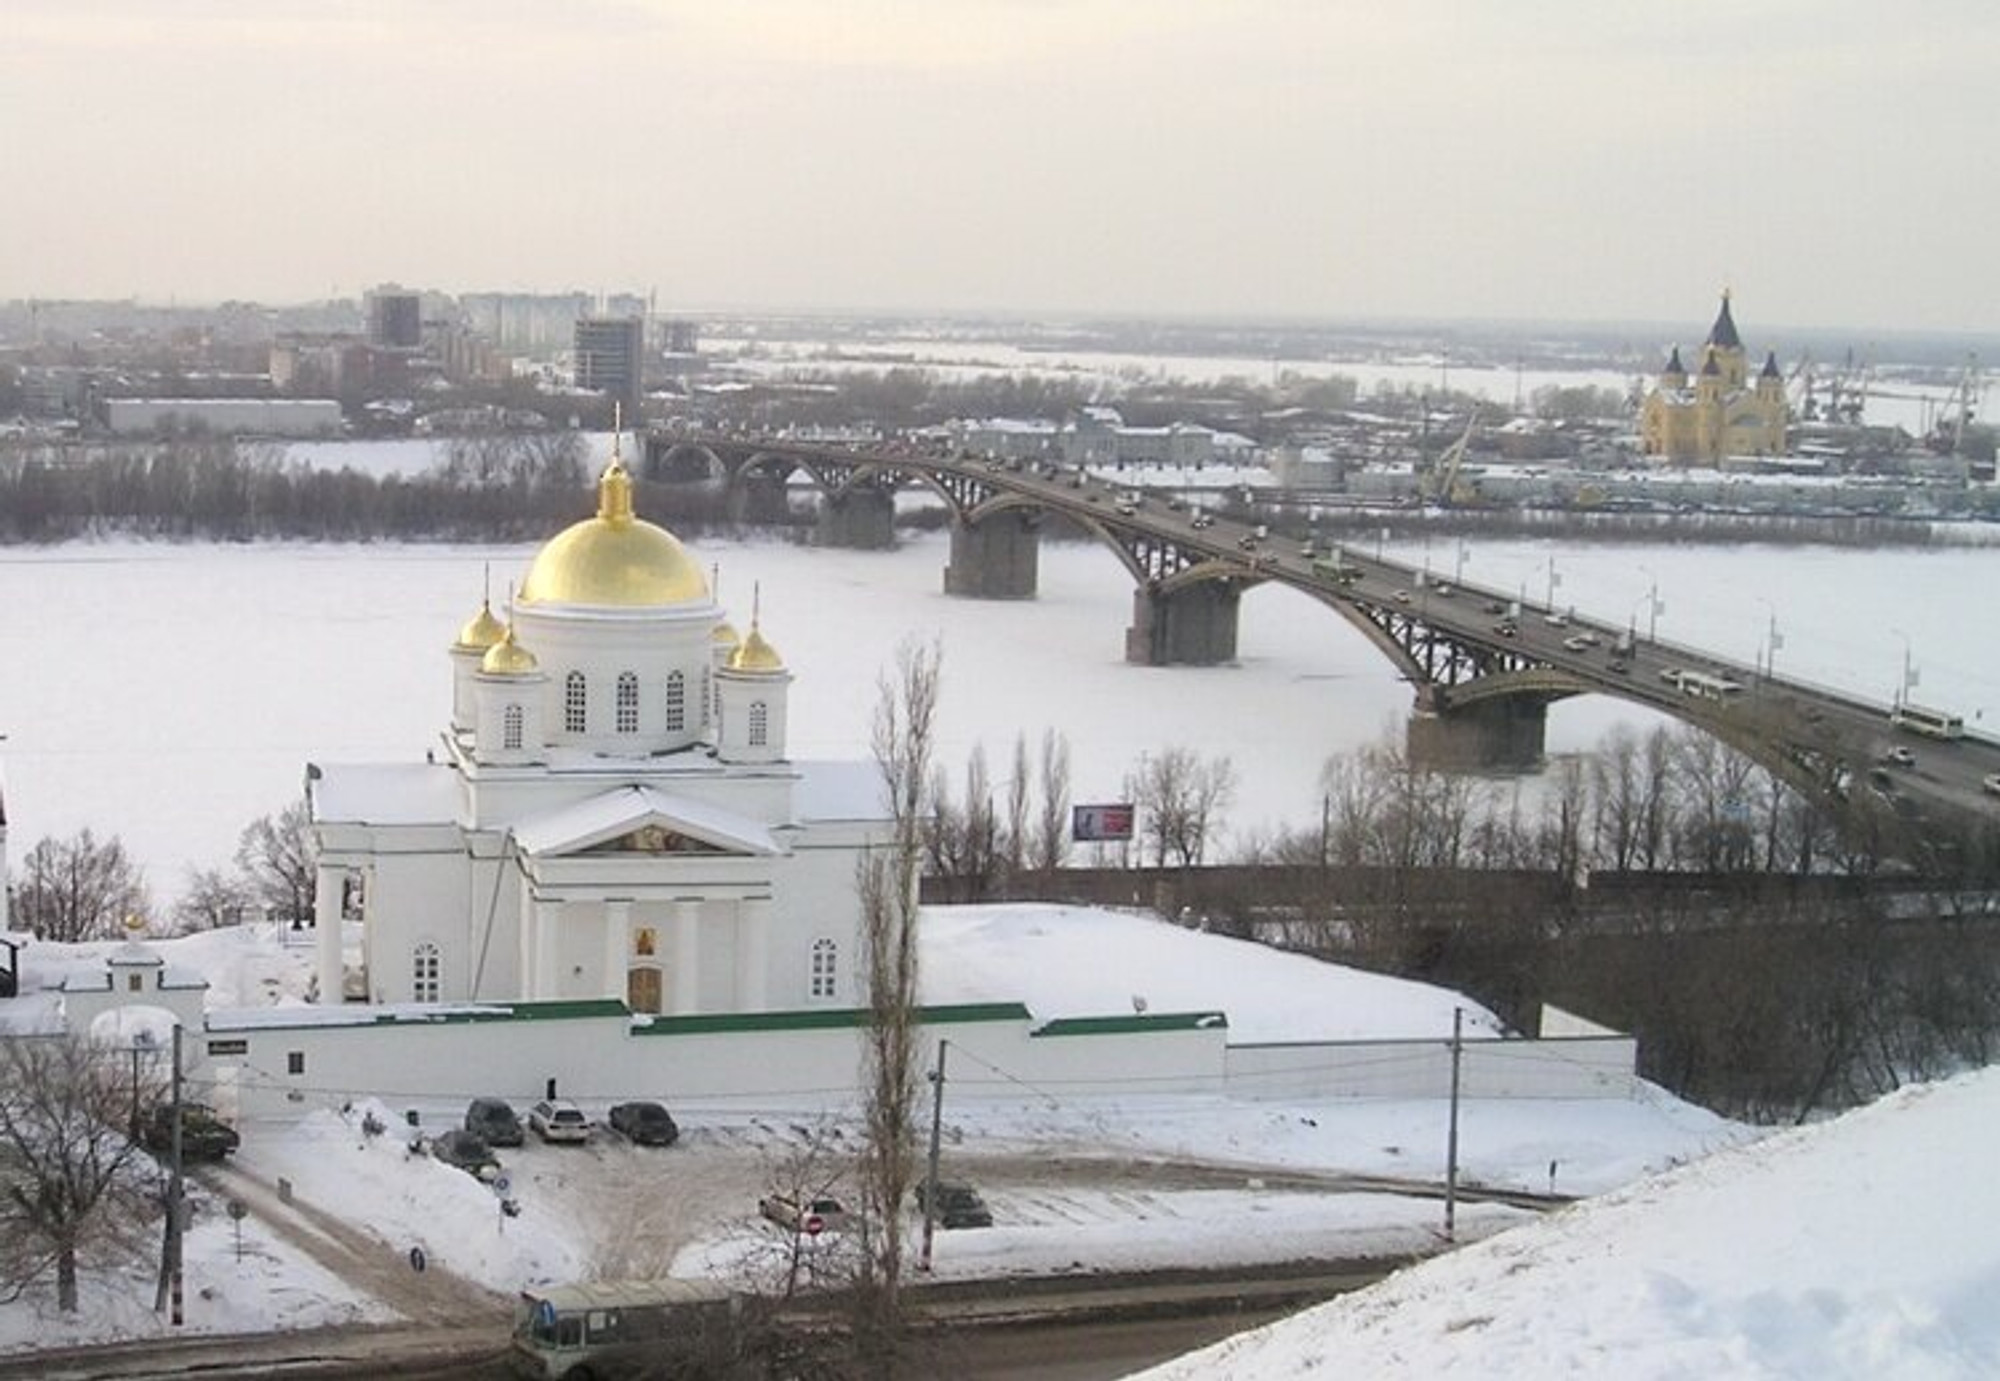 Семинарская церковь Алексия, митрополита Московского (Православный храм)